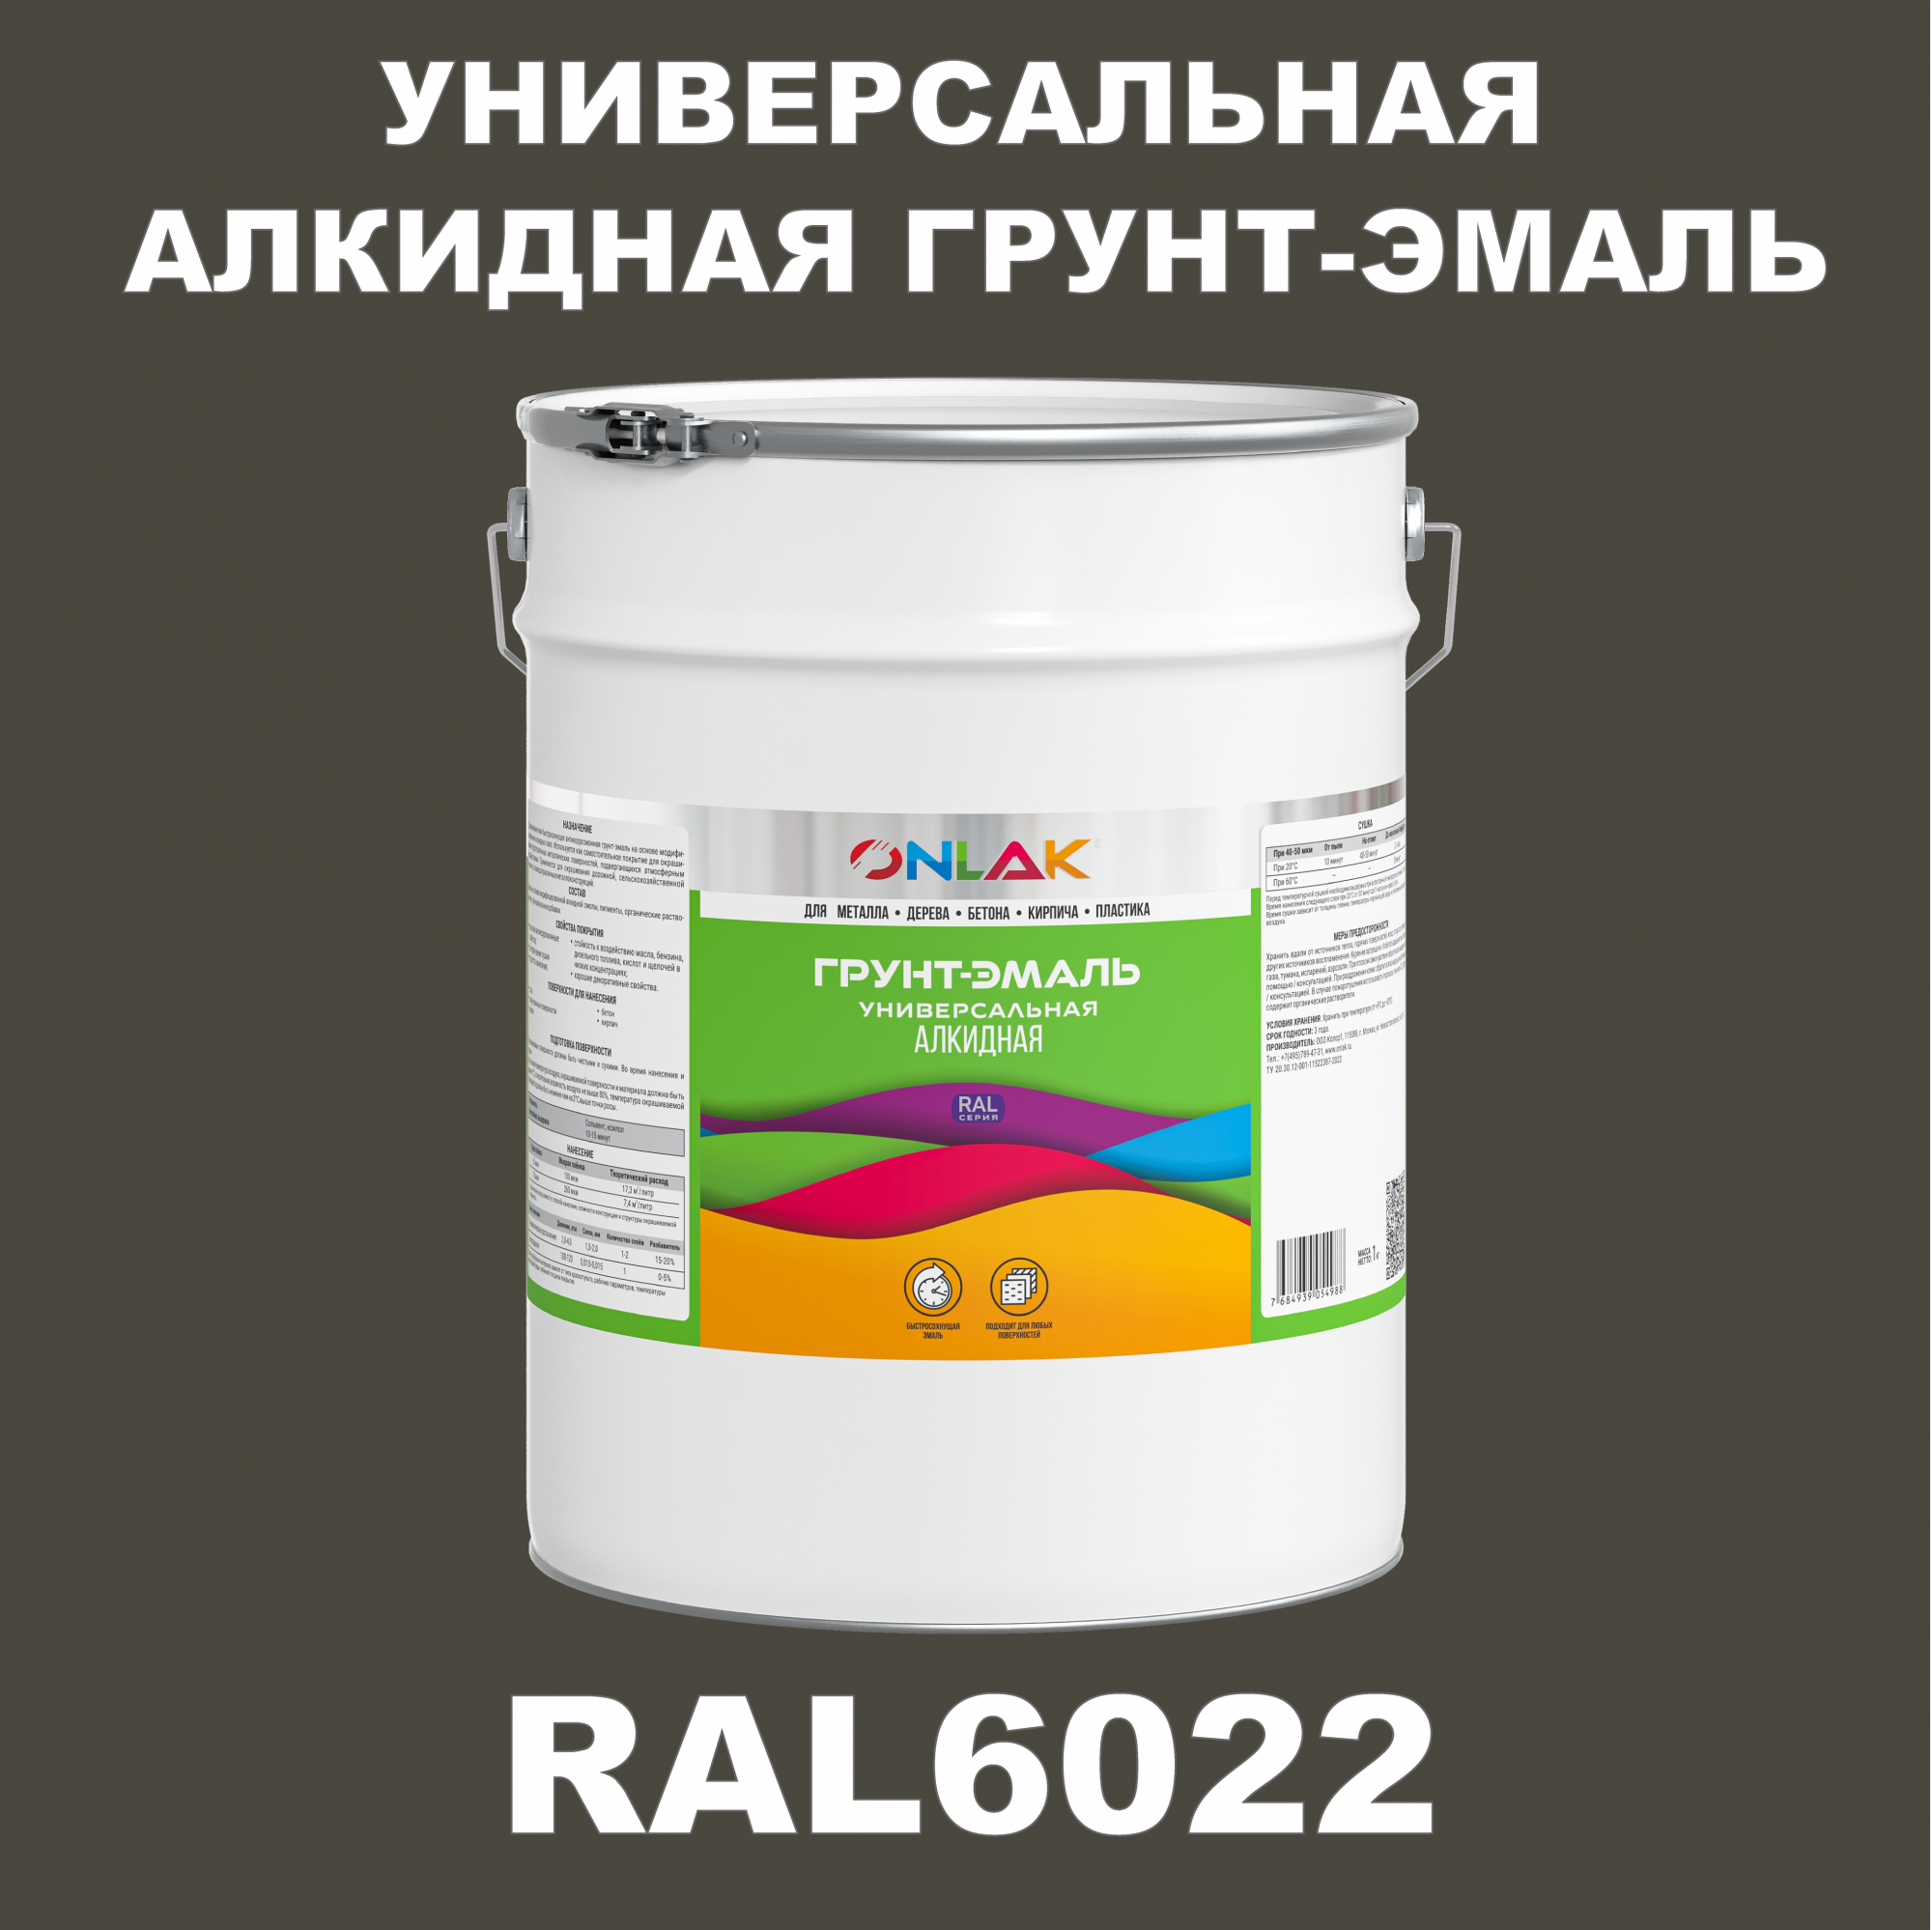 Грунт-эмаль ONLAK 1К RAL6022 антикоррозионная алкидная по металлу по ржавчине 20 кг грунт эмаль аэрозольная престиж 3в1 алкидная коричневая ral 8017 425 мл 0 425 кг